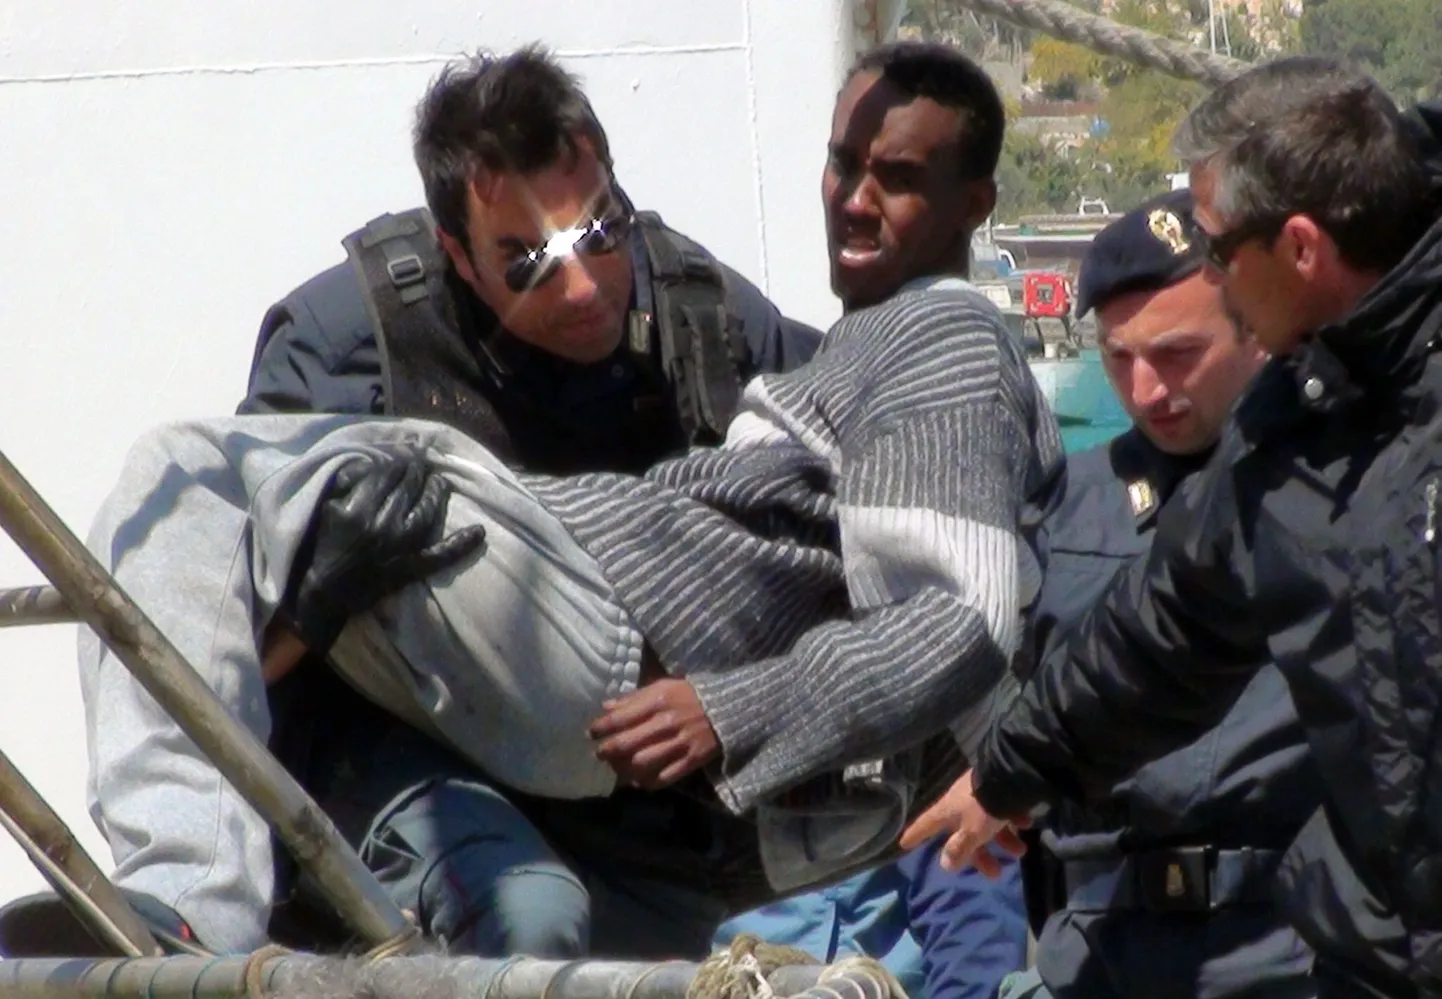 Lampedusa saarele saabub iga päev sadu illegaalseid immigrante.